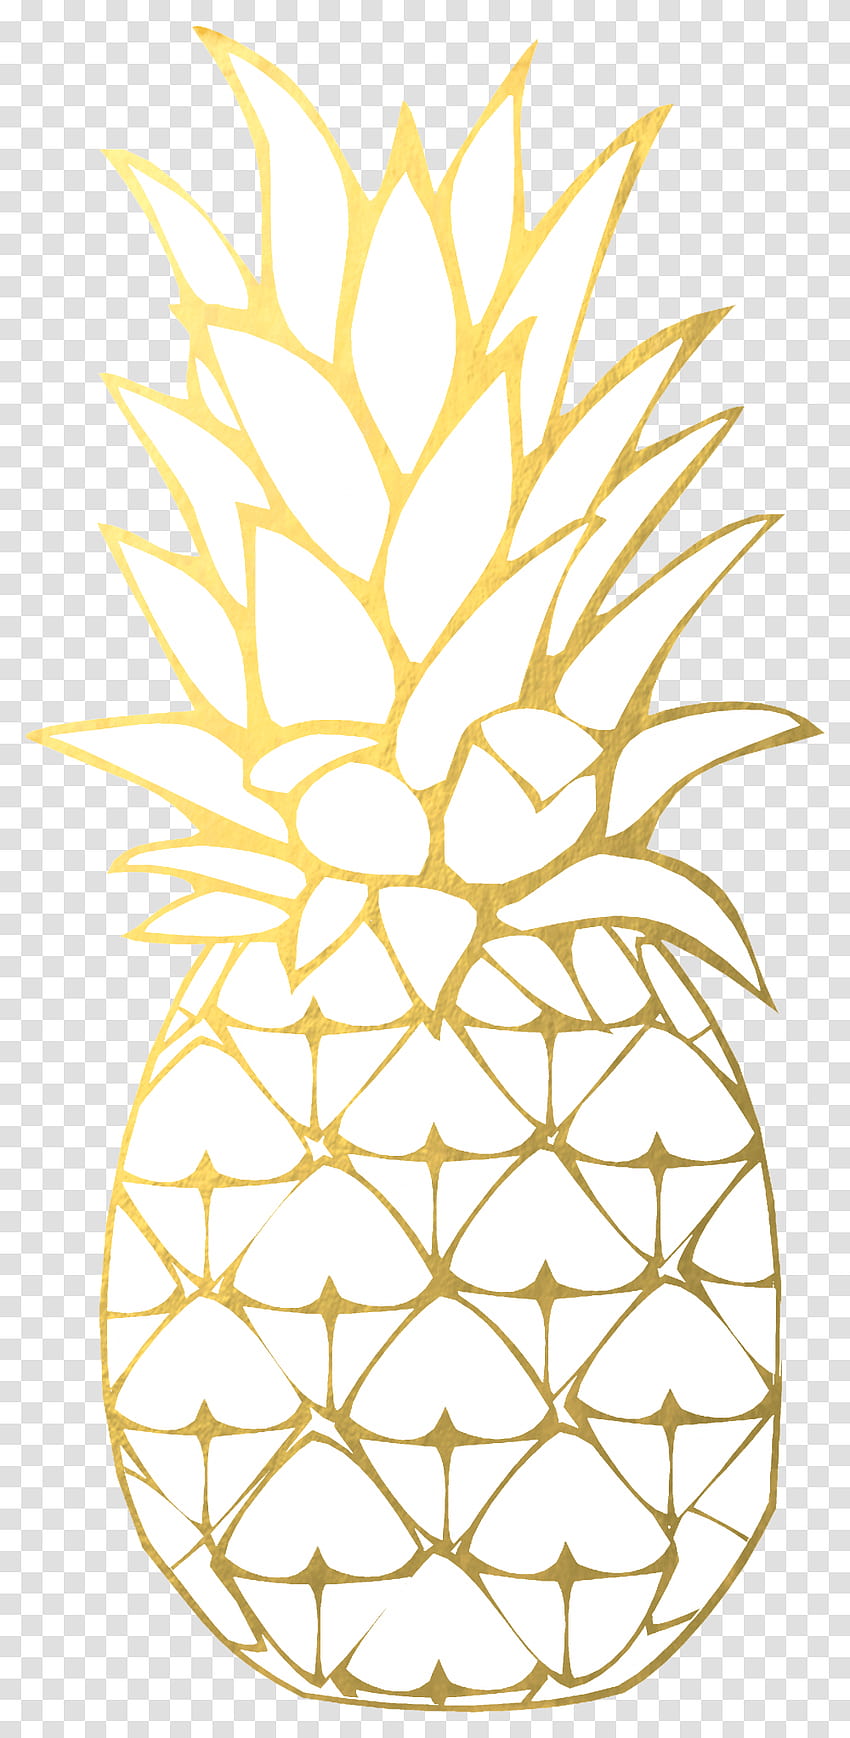 Ananas Clipart Złoty ananas Tła Złoty ananas, owoce, rośliny, jedzenie Przezroczysty png – Pngset Tapeta na telefon HD